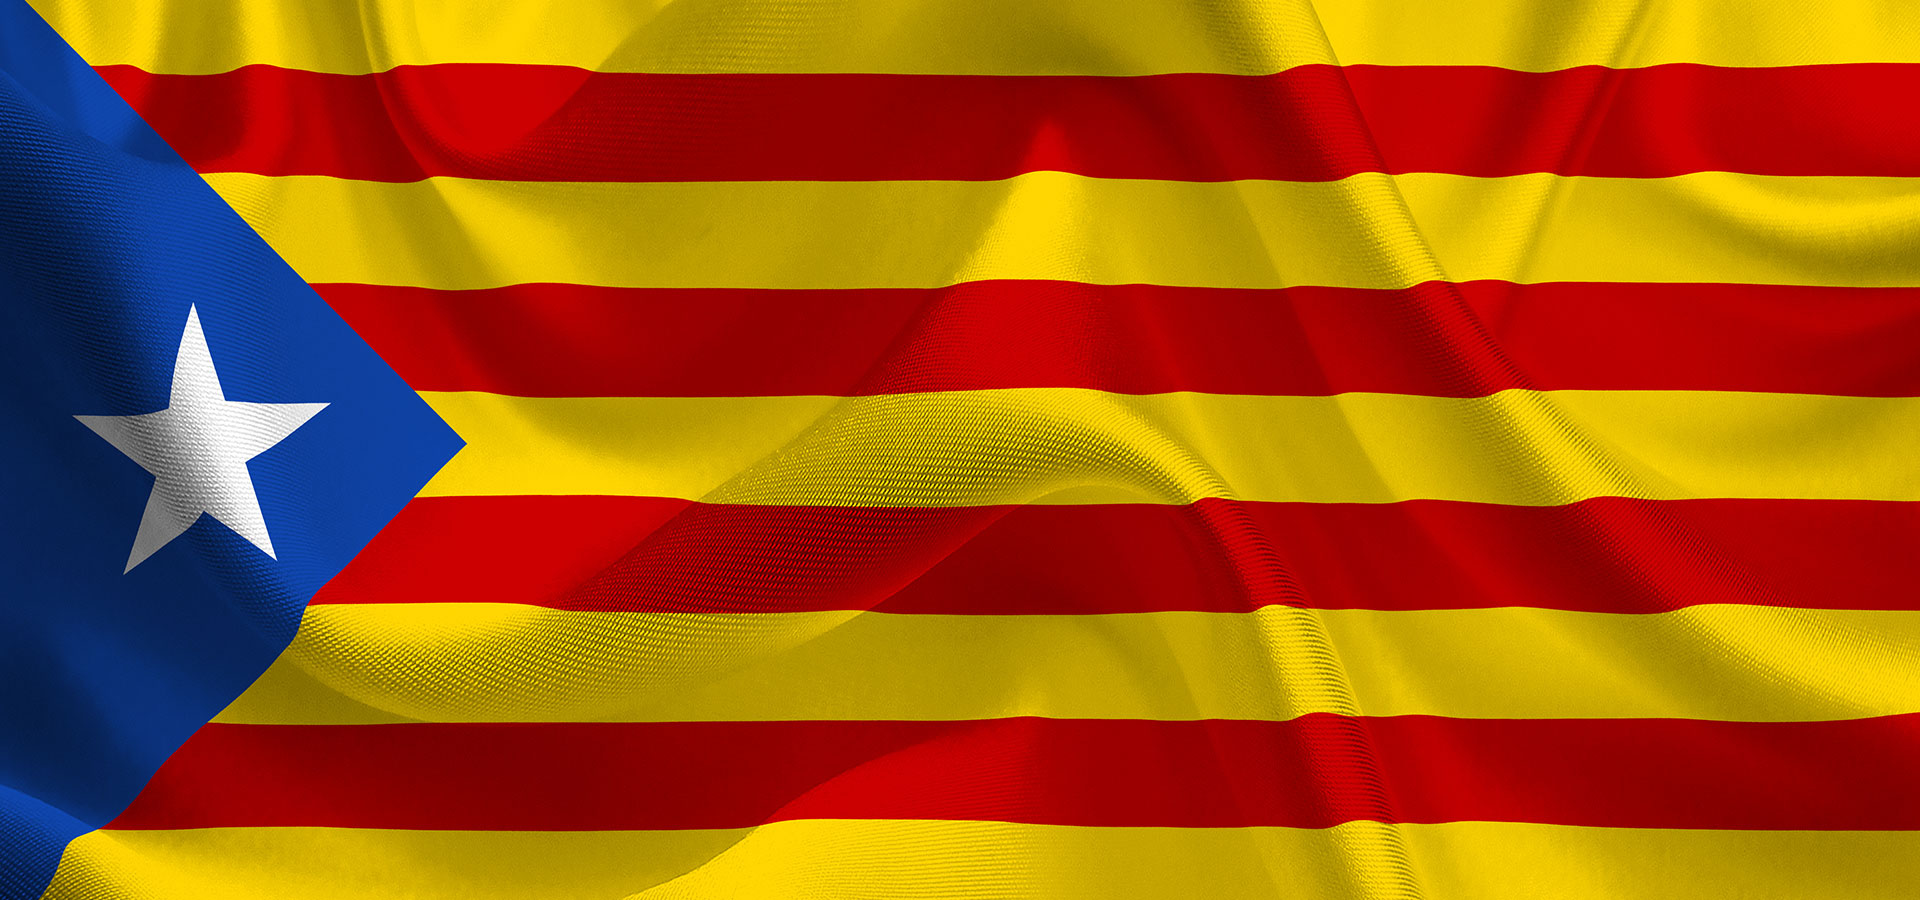 Pour le respect des libertés et des droits fondamentaux en Catalogne